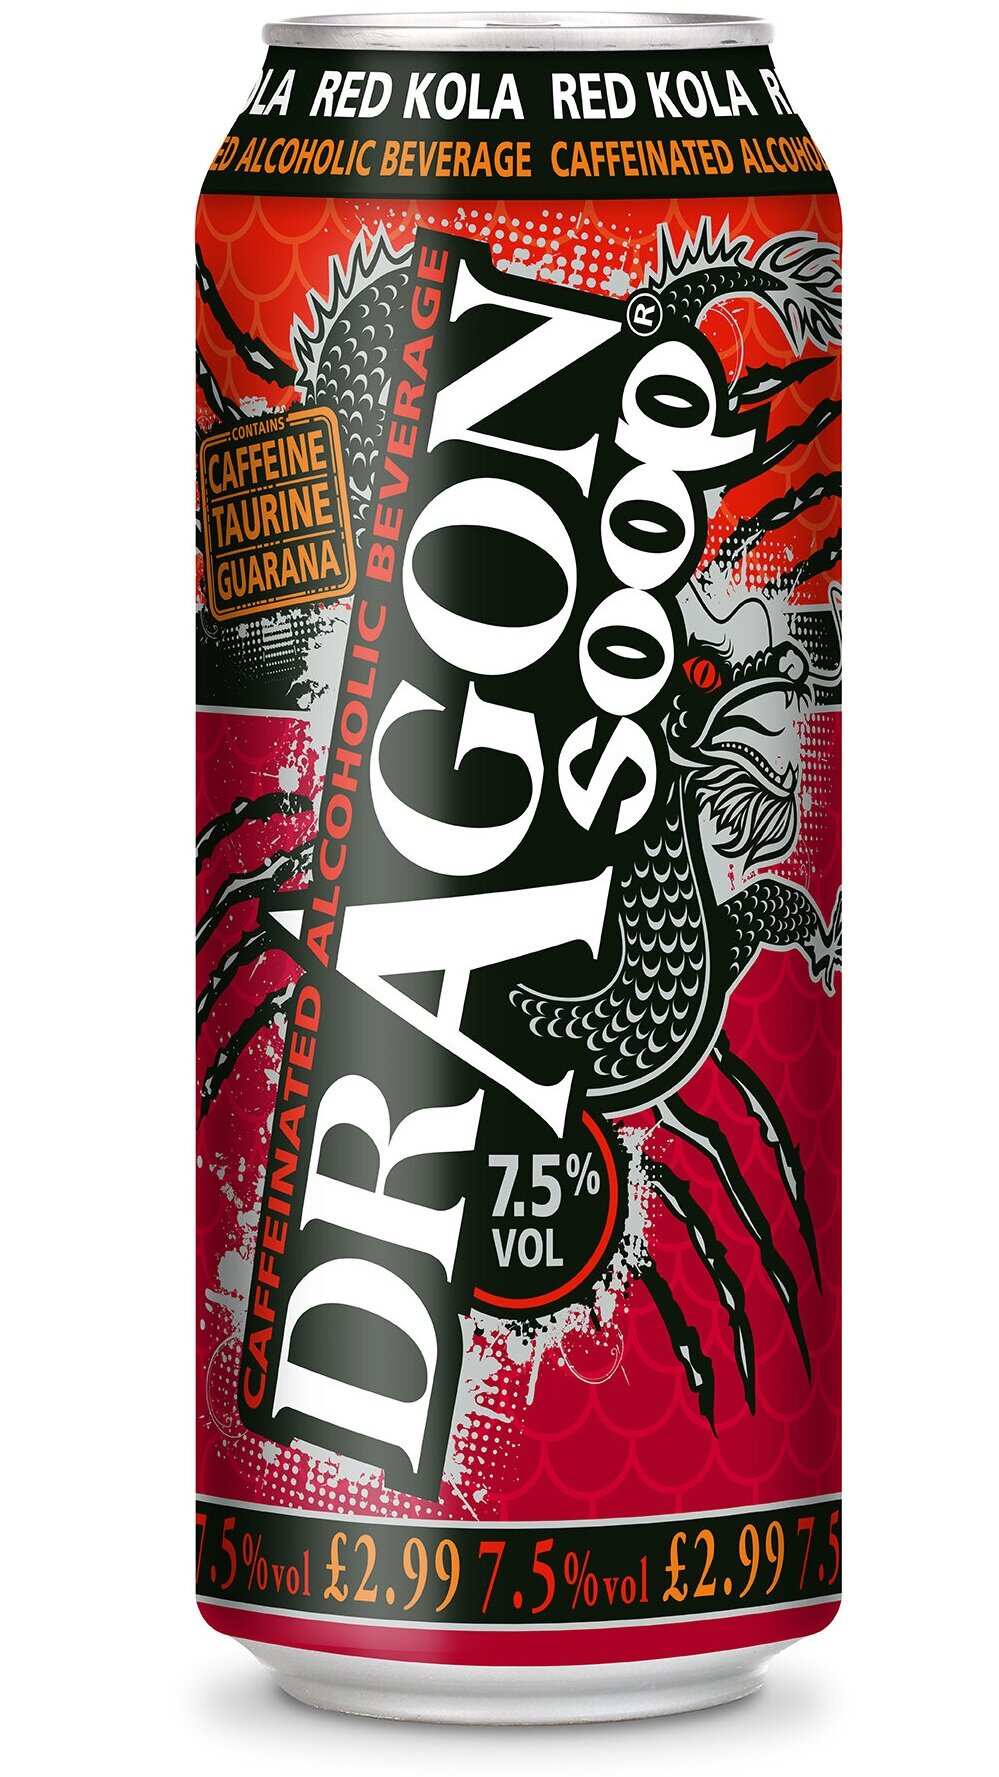 _+Dragon+Soop+500ml+RED+KOLA+PMP+72dpi.jpg